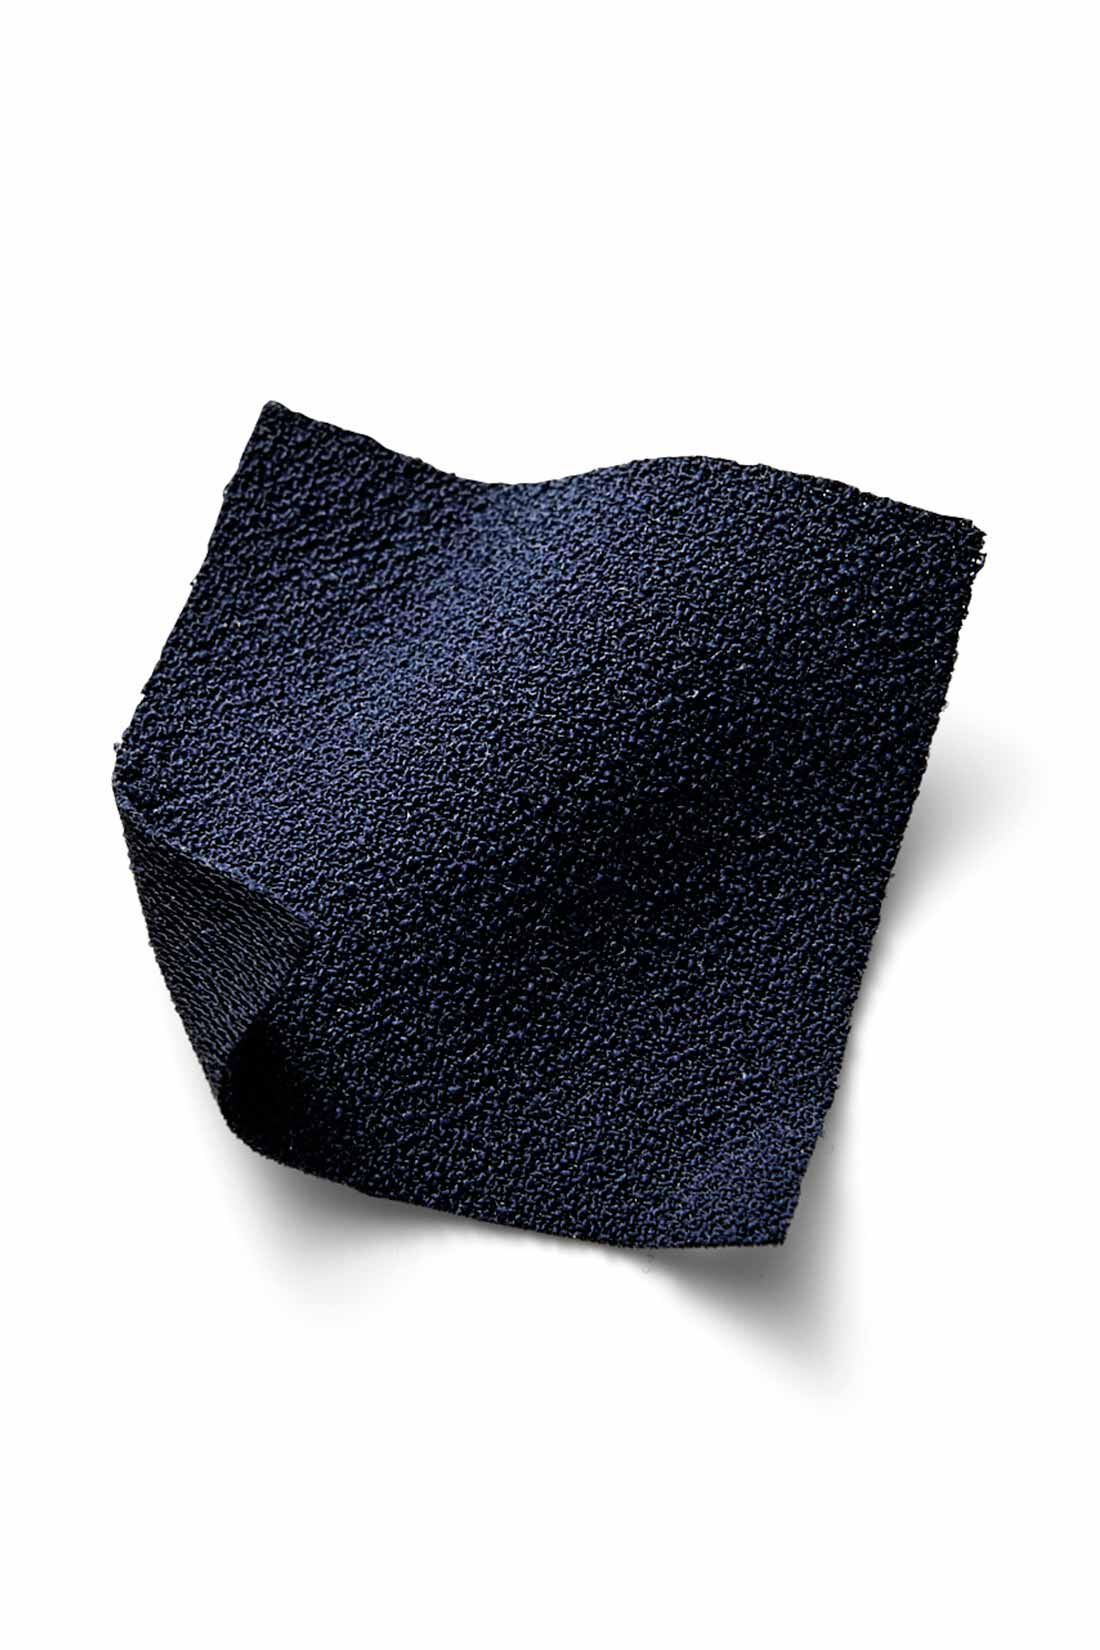 IEDIT|牧野紗弥さん×IEDIT[イディット]　マルチに使える万能ネイビーのスカートセットアップ|上質感のある布はく素材ながら、伸びやかできゅうくつ感のないらくな着心地。